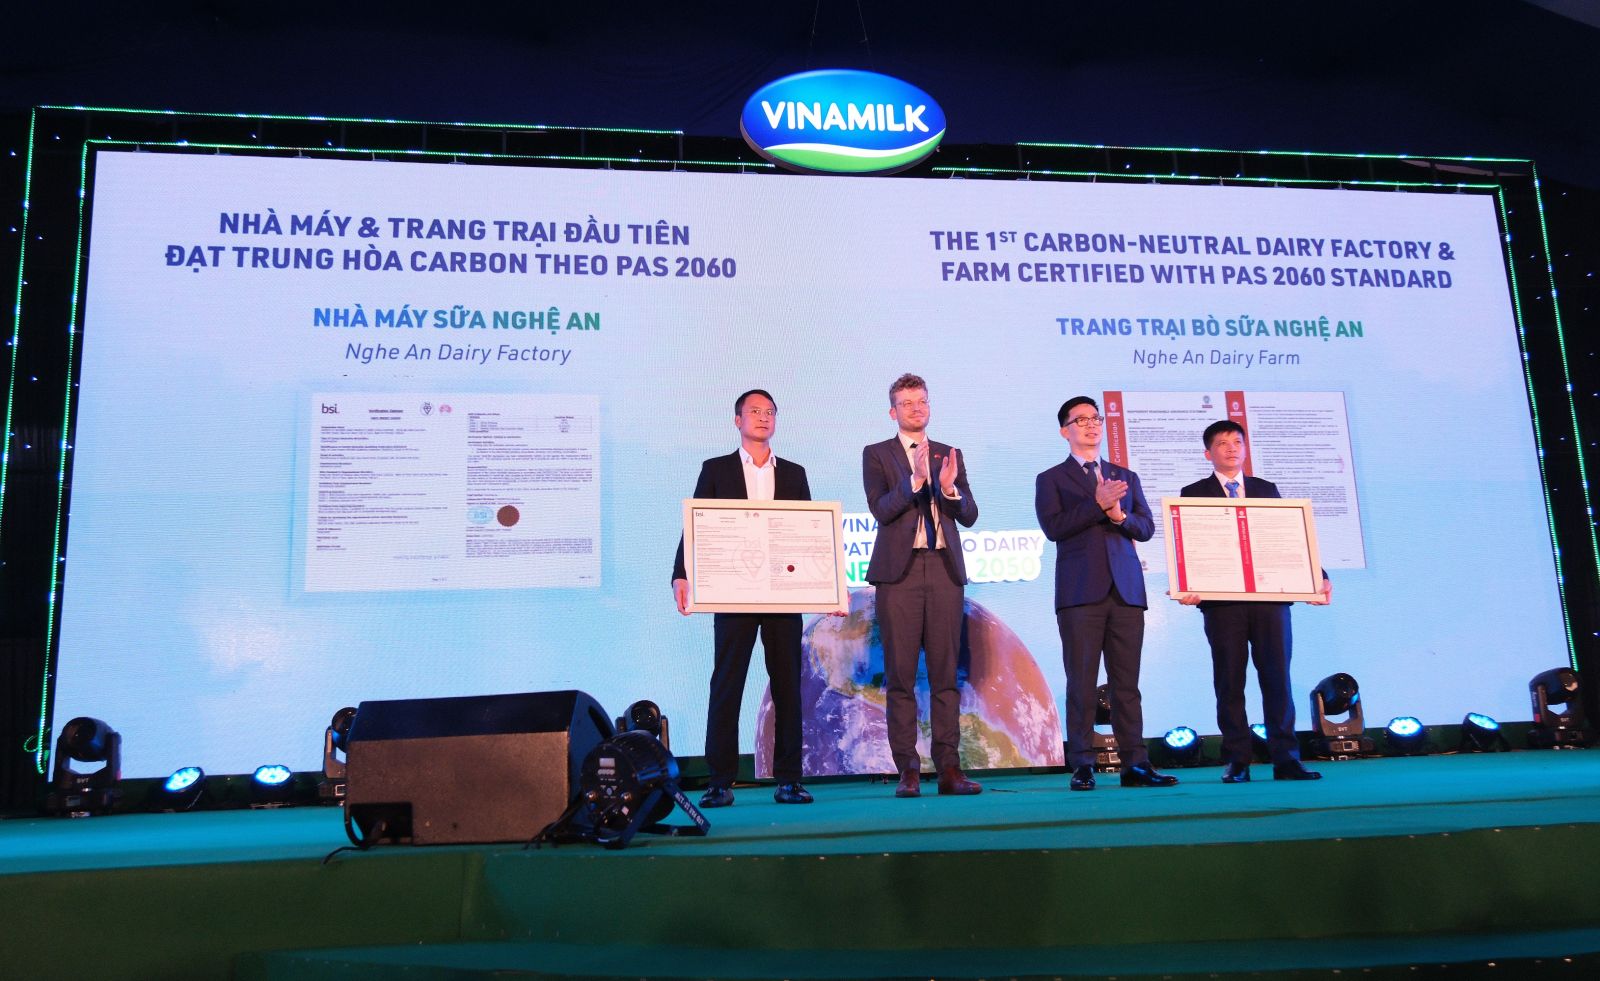 Đại diện các tổ chức quốc tế trao chứng nhận trung hòa carbon cho lãnh đạo nhà máy sữa và trang trại của Vinamilk tại Nghệ An.